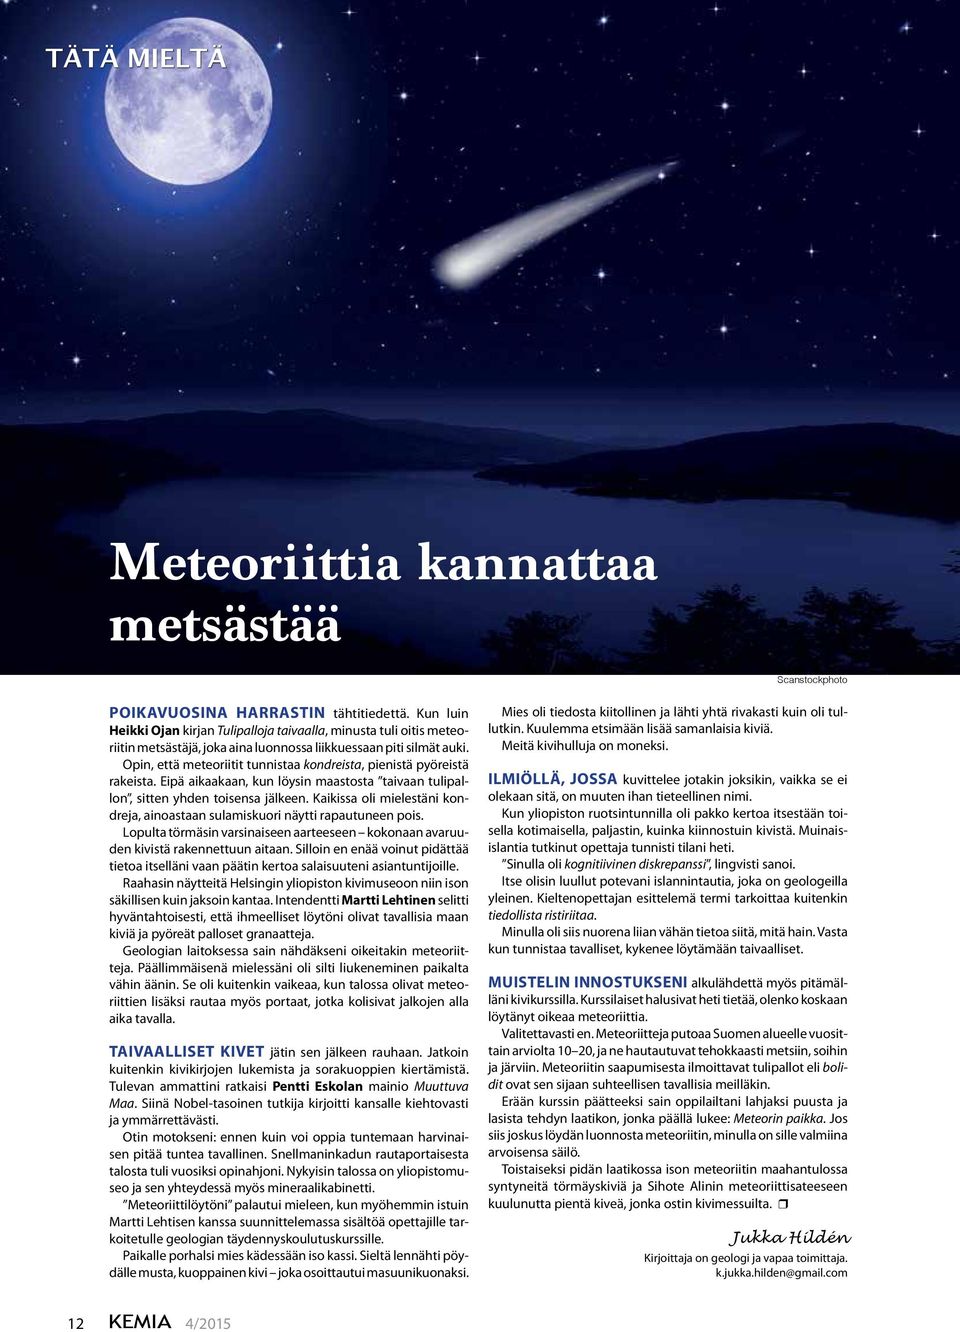 Opin, että meteoriitit tunnistaa kondreista, pienistä pyöreistä rakeista. Eipä aikaakaan, kun löysin maastosta taivaan tulipallon, sitten yhden toisensa jälkeen.